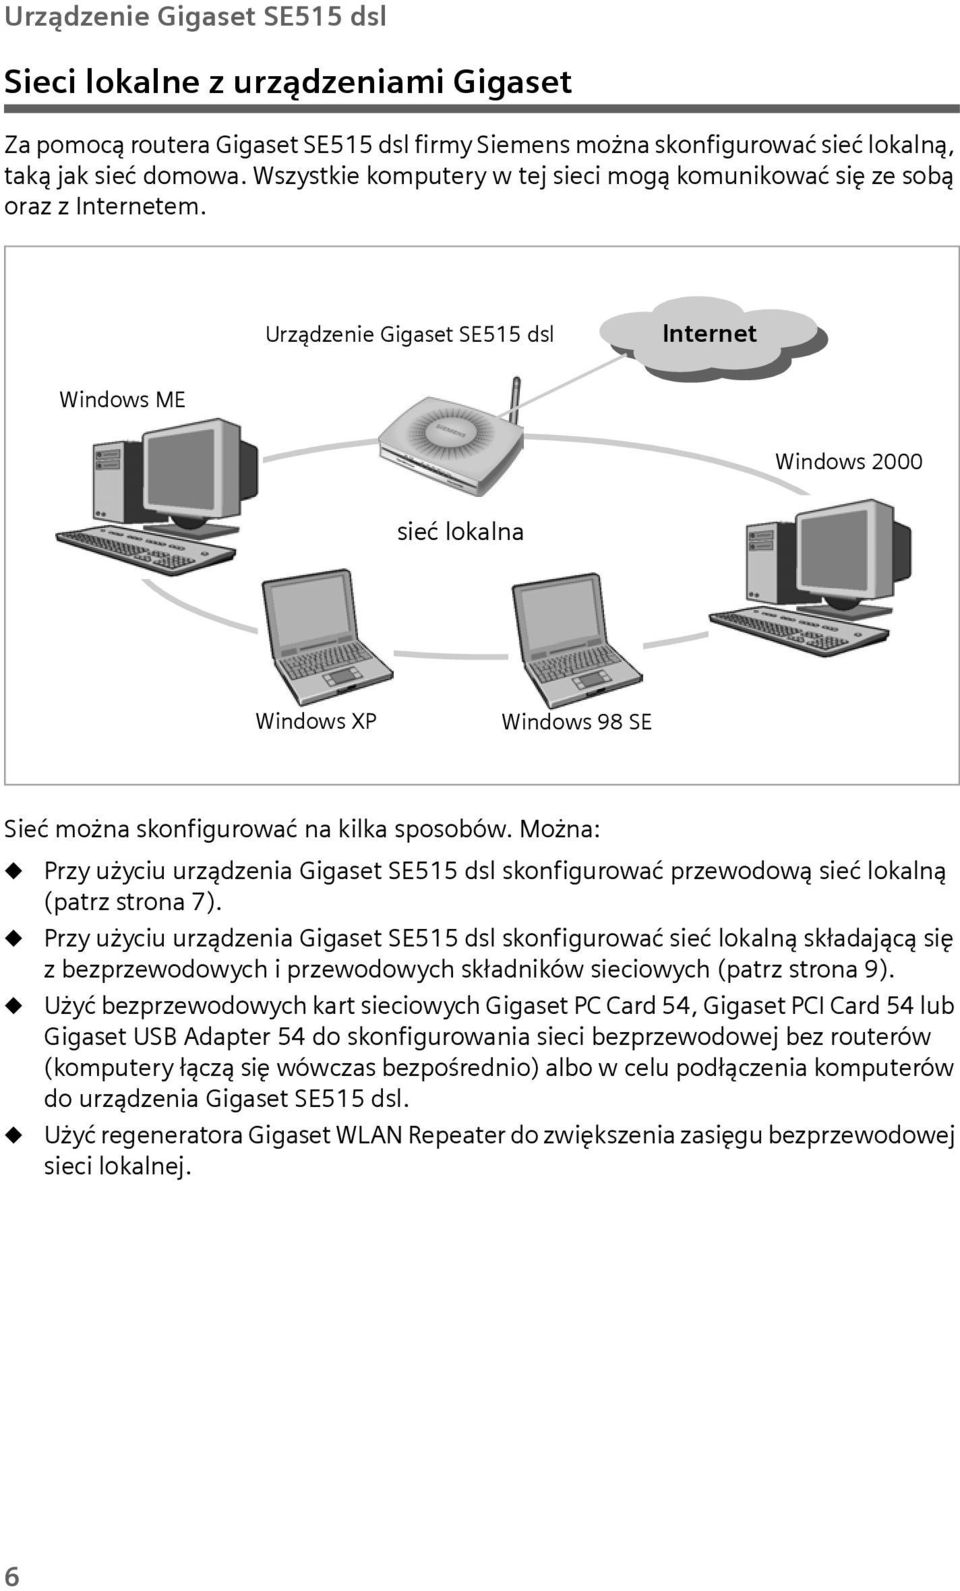 Urządzenie Gigaset SE515 dsl Internet Windows ME Windows 2000 sieć lokalna Windows XP Windows 98 SE Sieć można skonfigurować na kilka sposobów.